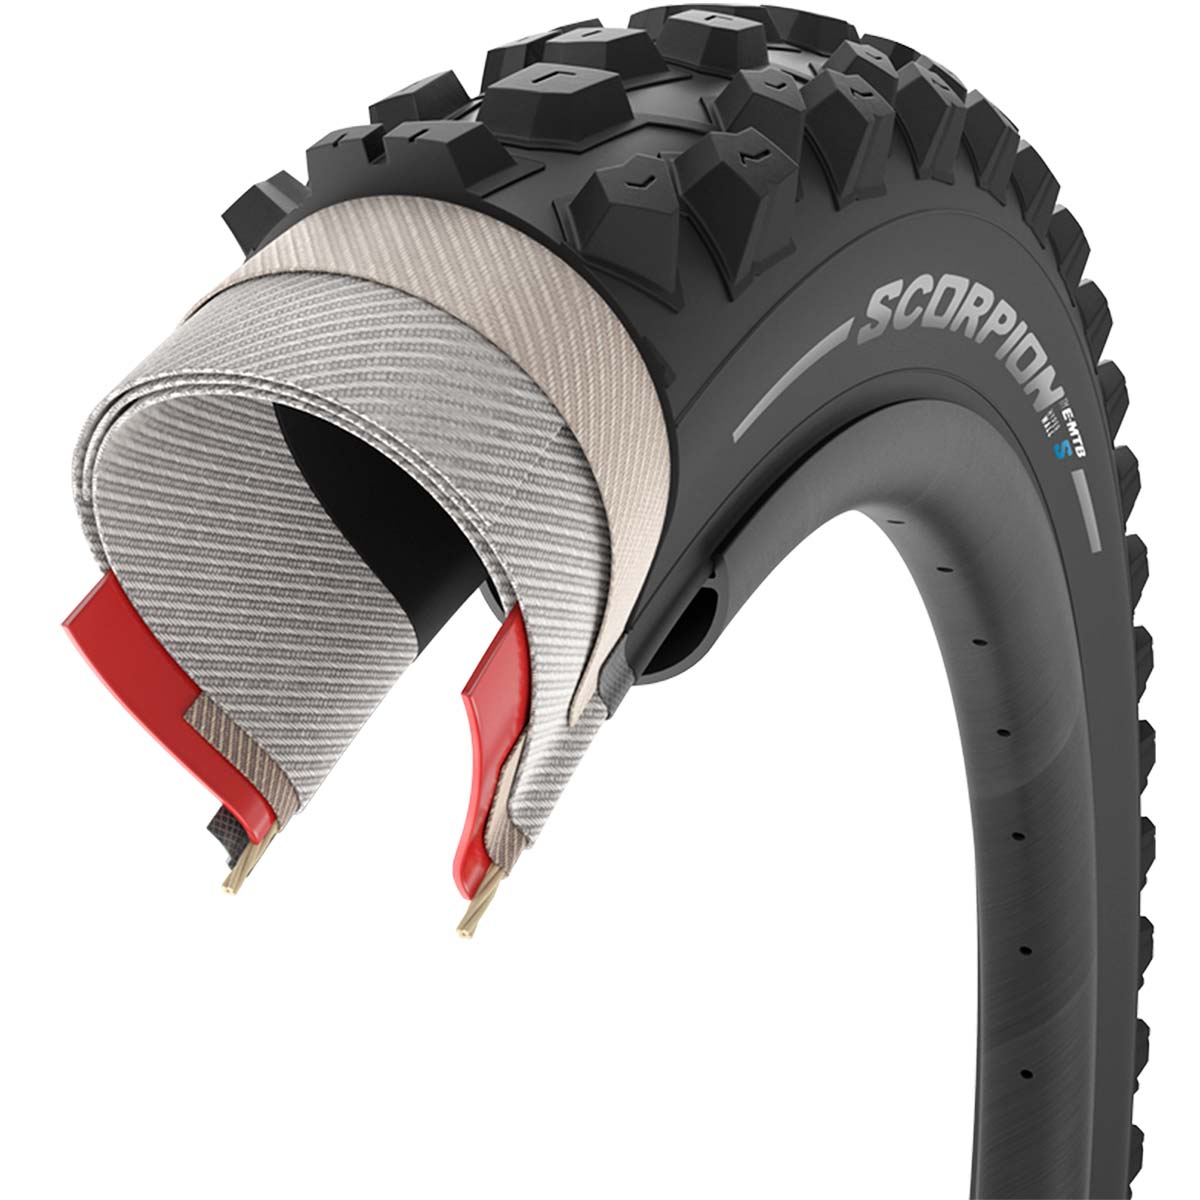 En TodoMountainBike: Pirelli lanza Scorpion E-MTB, una línea de neumáticos de Trail y Enduro para bicicletas eléctricas